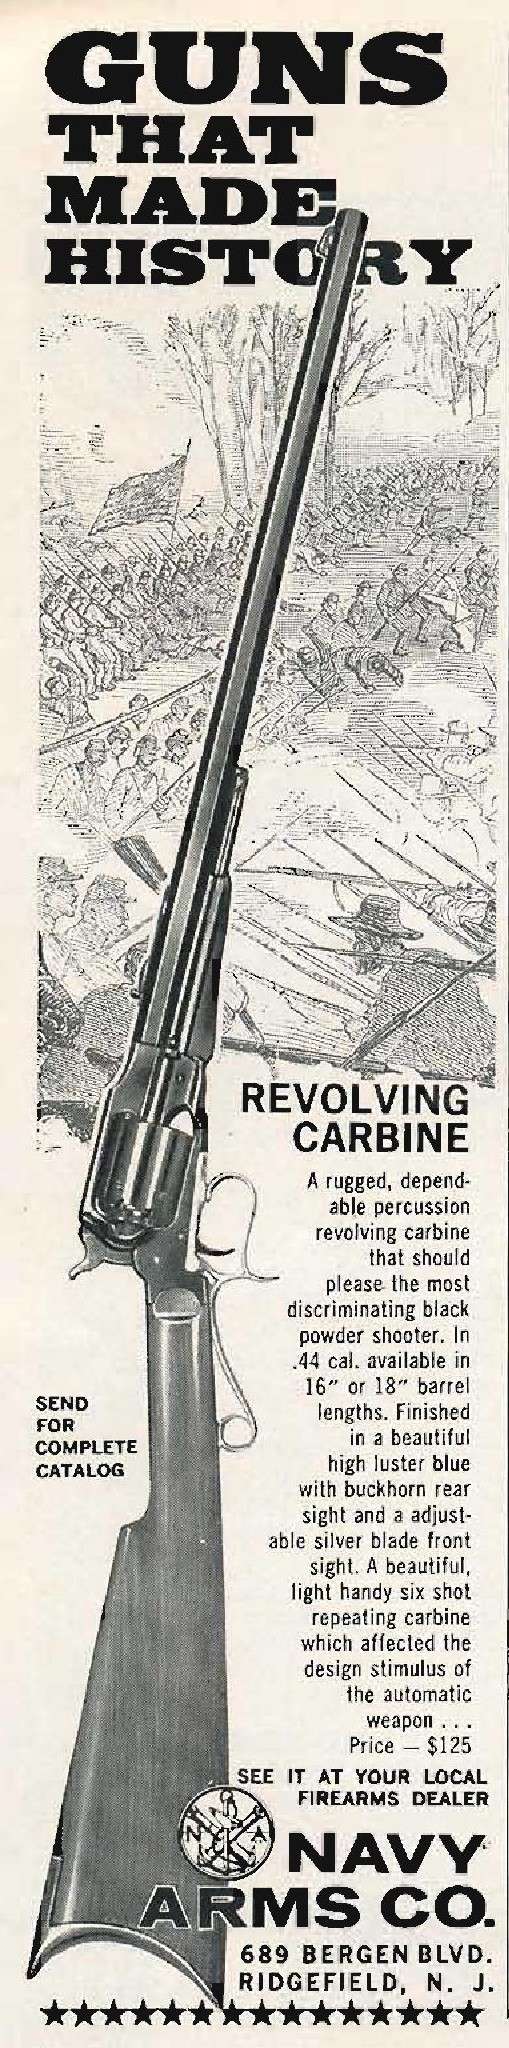 publicités pour navy Arms Co - 1962 Pub_na10